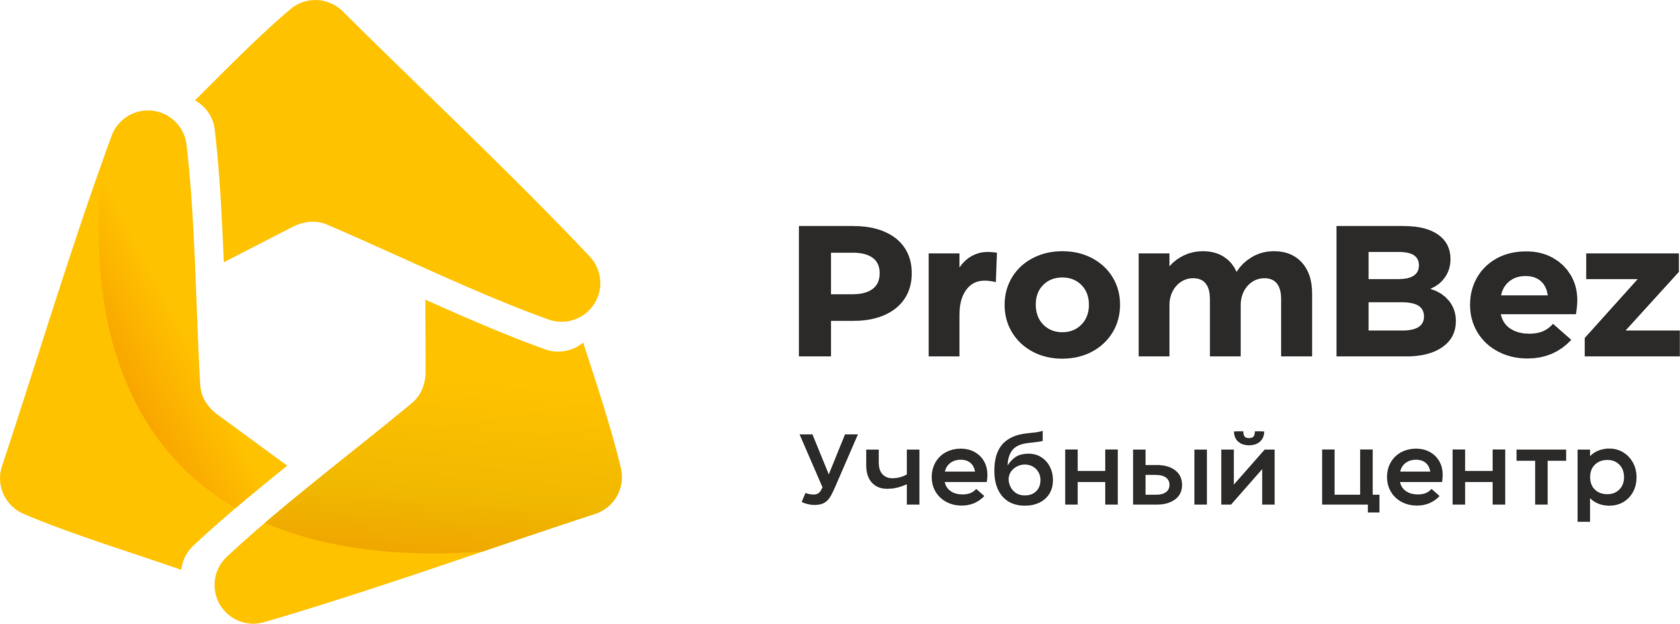 Prombez test ru. Пром без. Prombez программа. Prombez Екатеринбург. ПРОМБЕЗ под ключ.